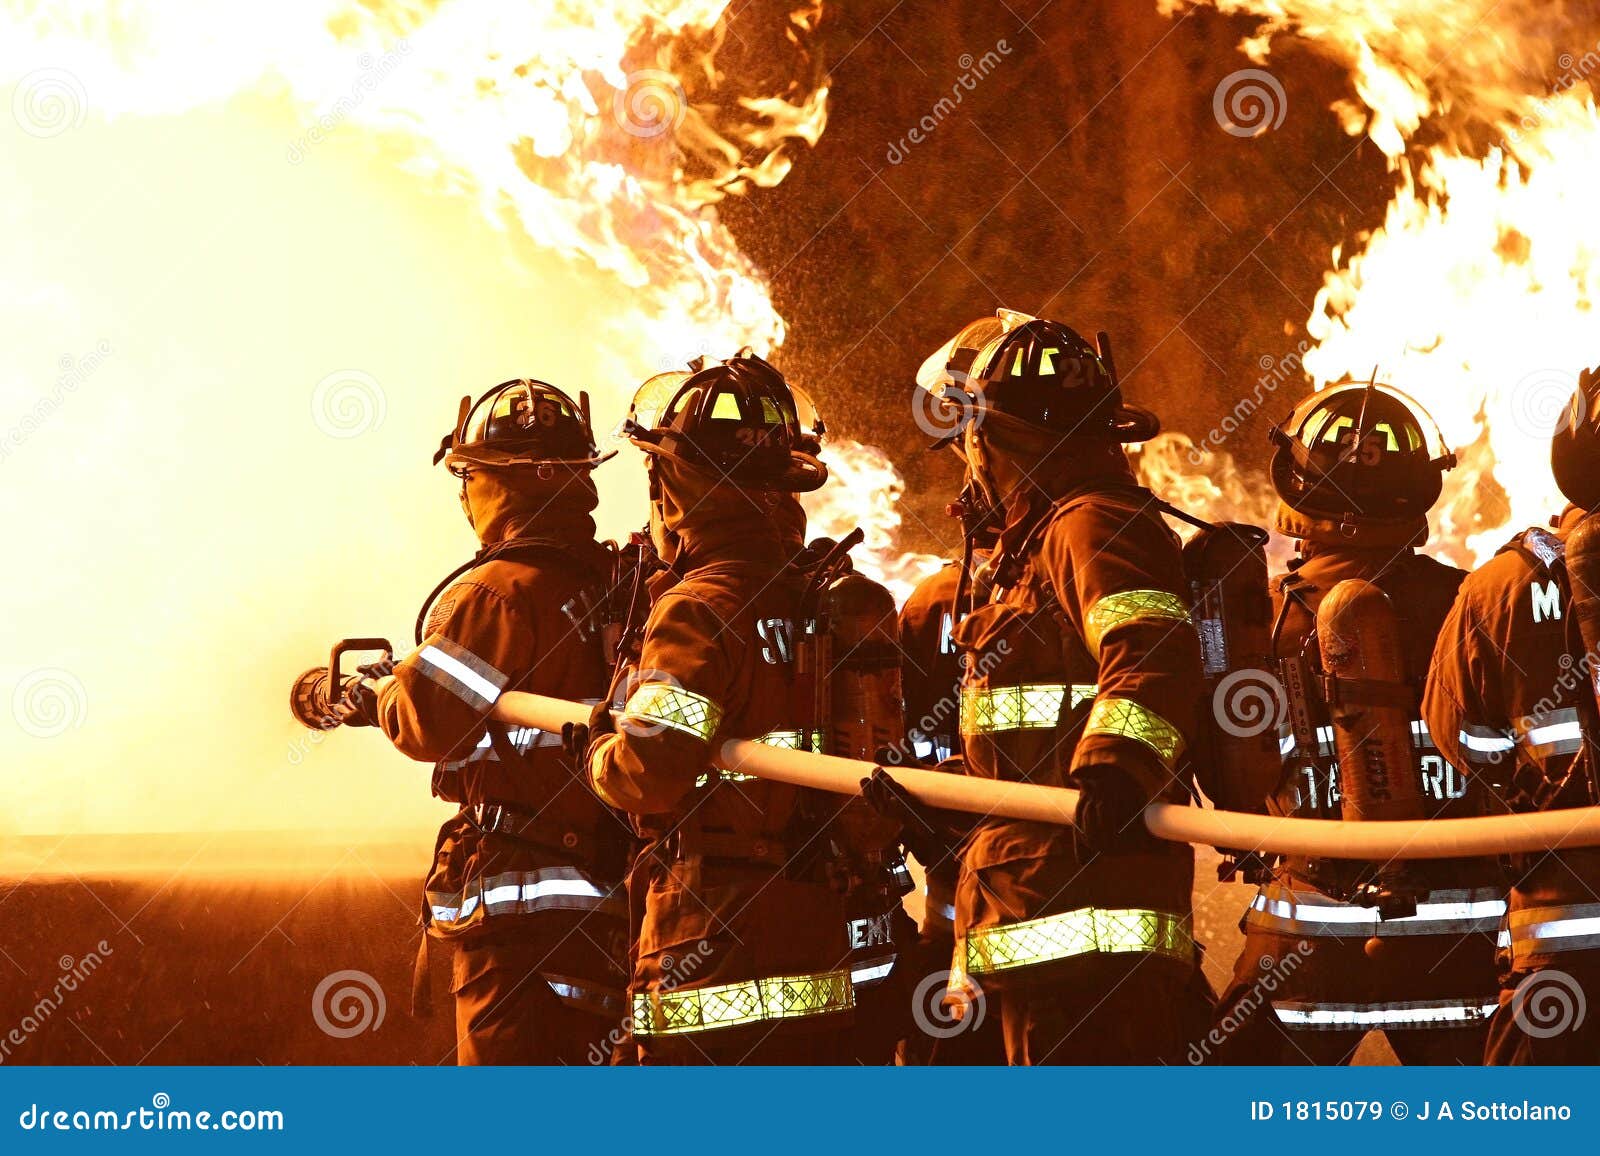 pompieri-che-combattono-le-fiamme-181507